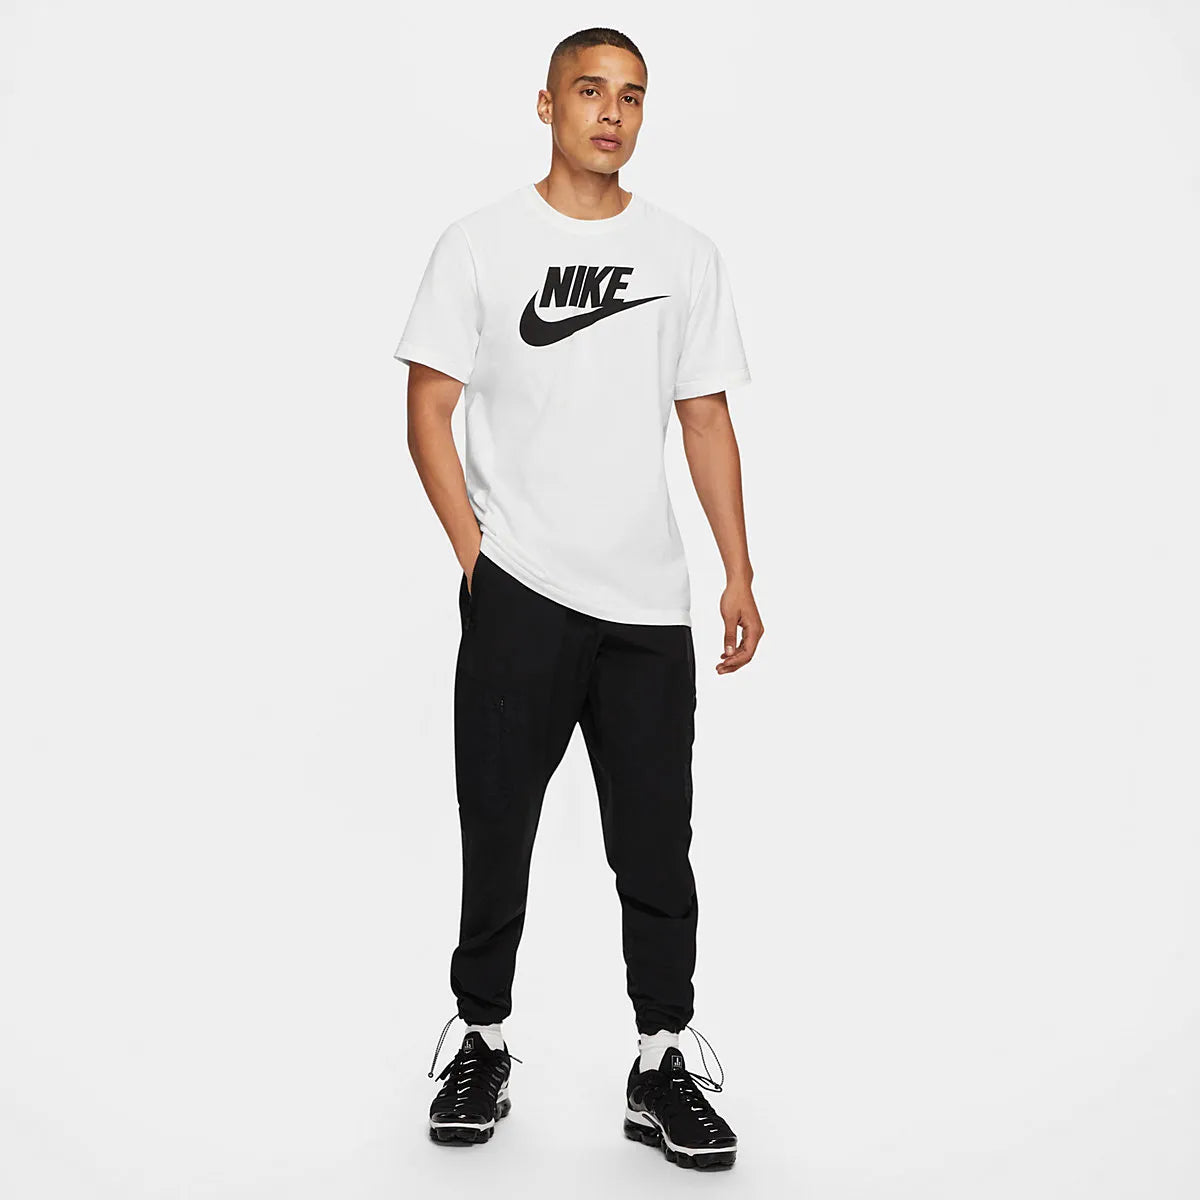 tradesports.co.uk Nike Men's NSW Graphic Logo T-Shirt BV0622 100